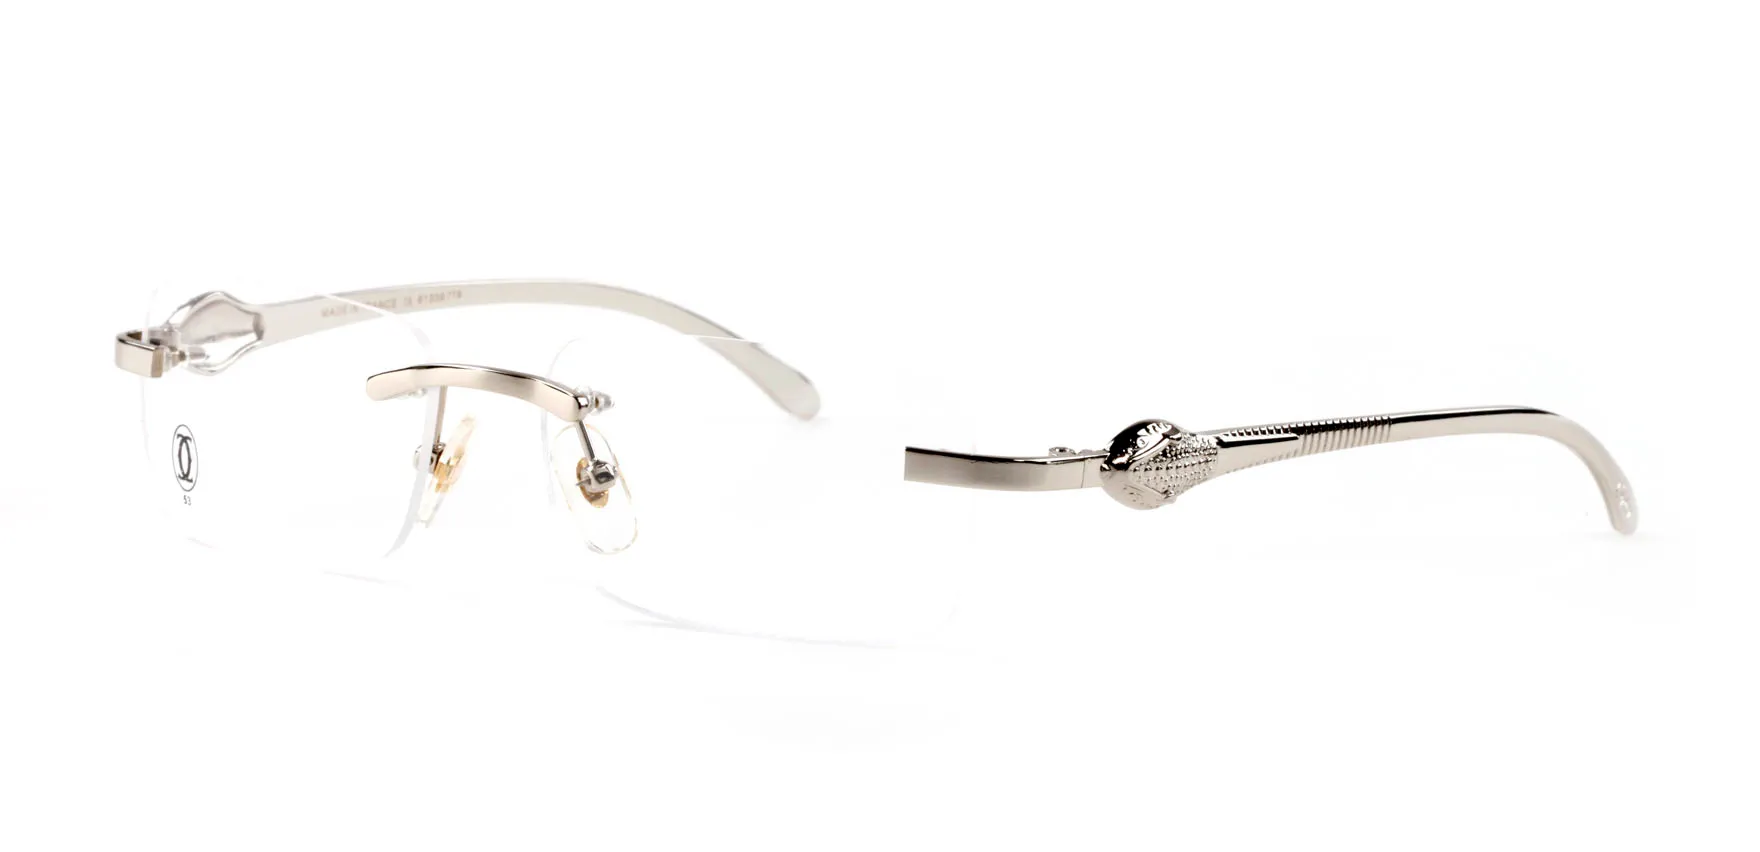 Оптово-2018 Новые Мода Товары для моды Мужчины Солнцезащитные Очки для солнцезащитных очков RIMLENLE RIMLEL RIMLEL FRAMES Металлические серебряные ножки Мода Hiphop Sun Glasses Eyeglasses